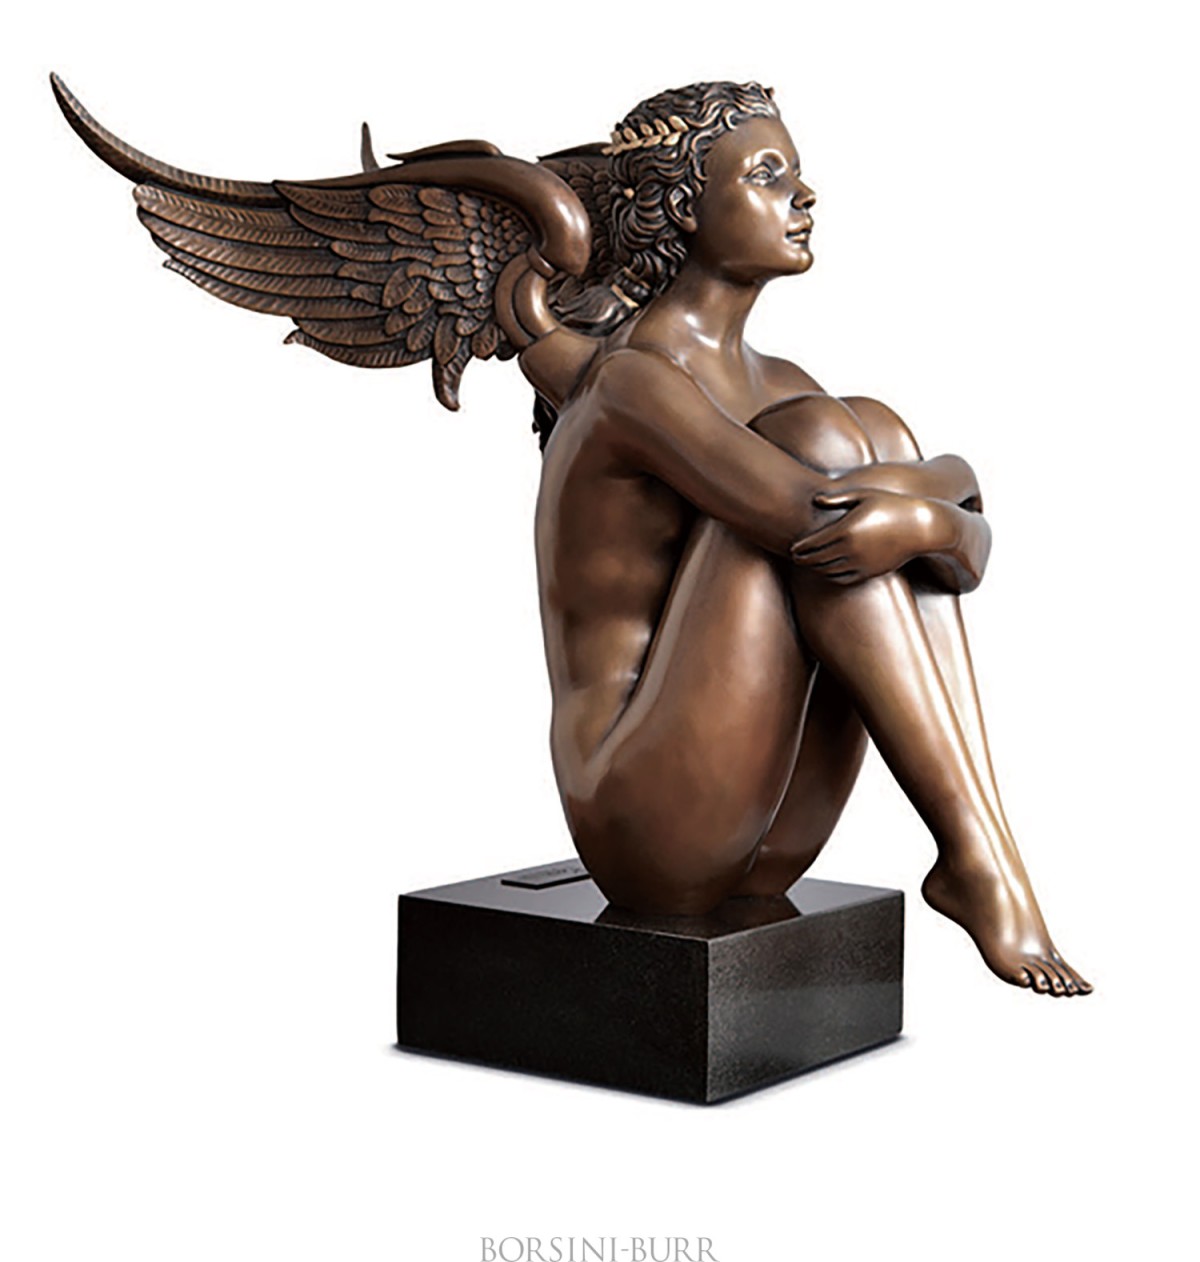 "Magic Spring" Bronze Sculpture by Michael Parkes